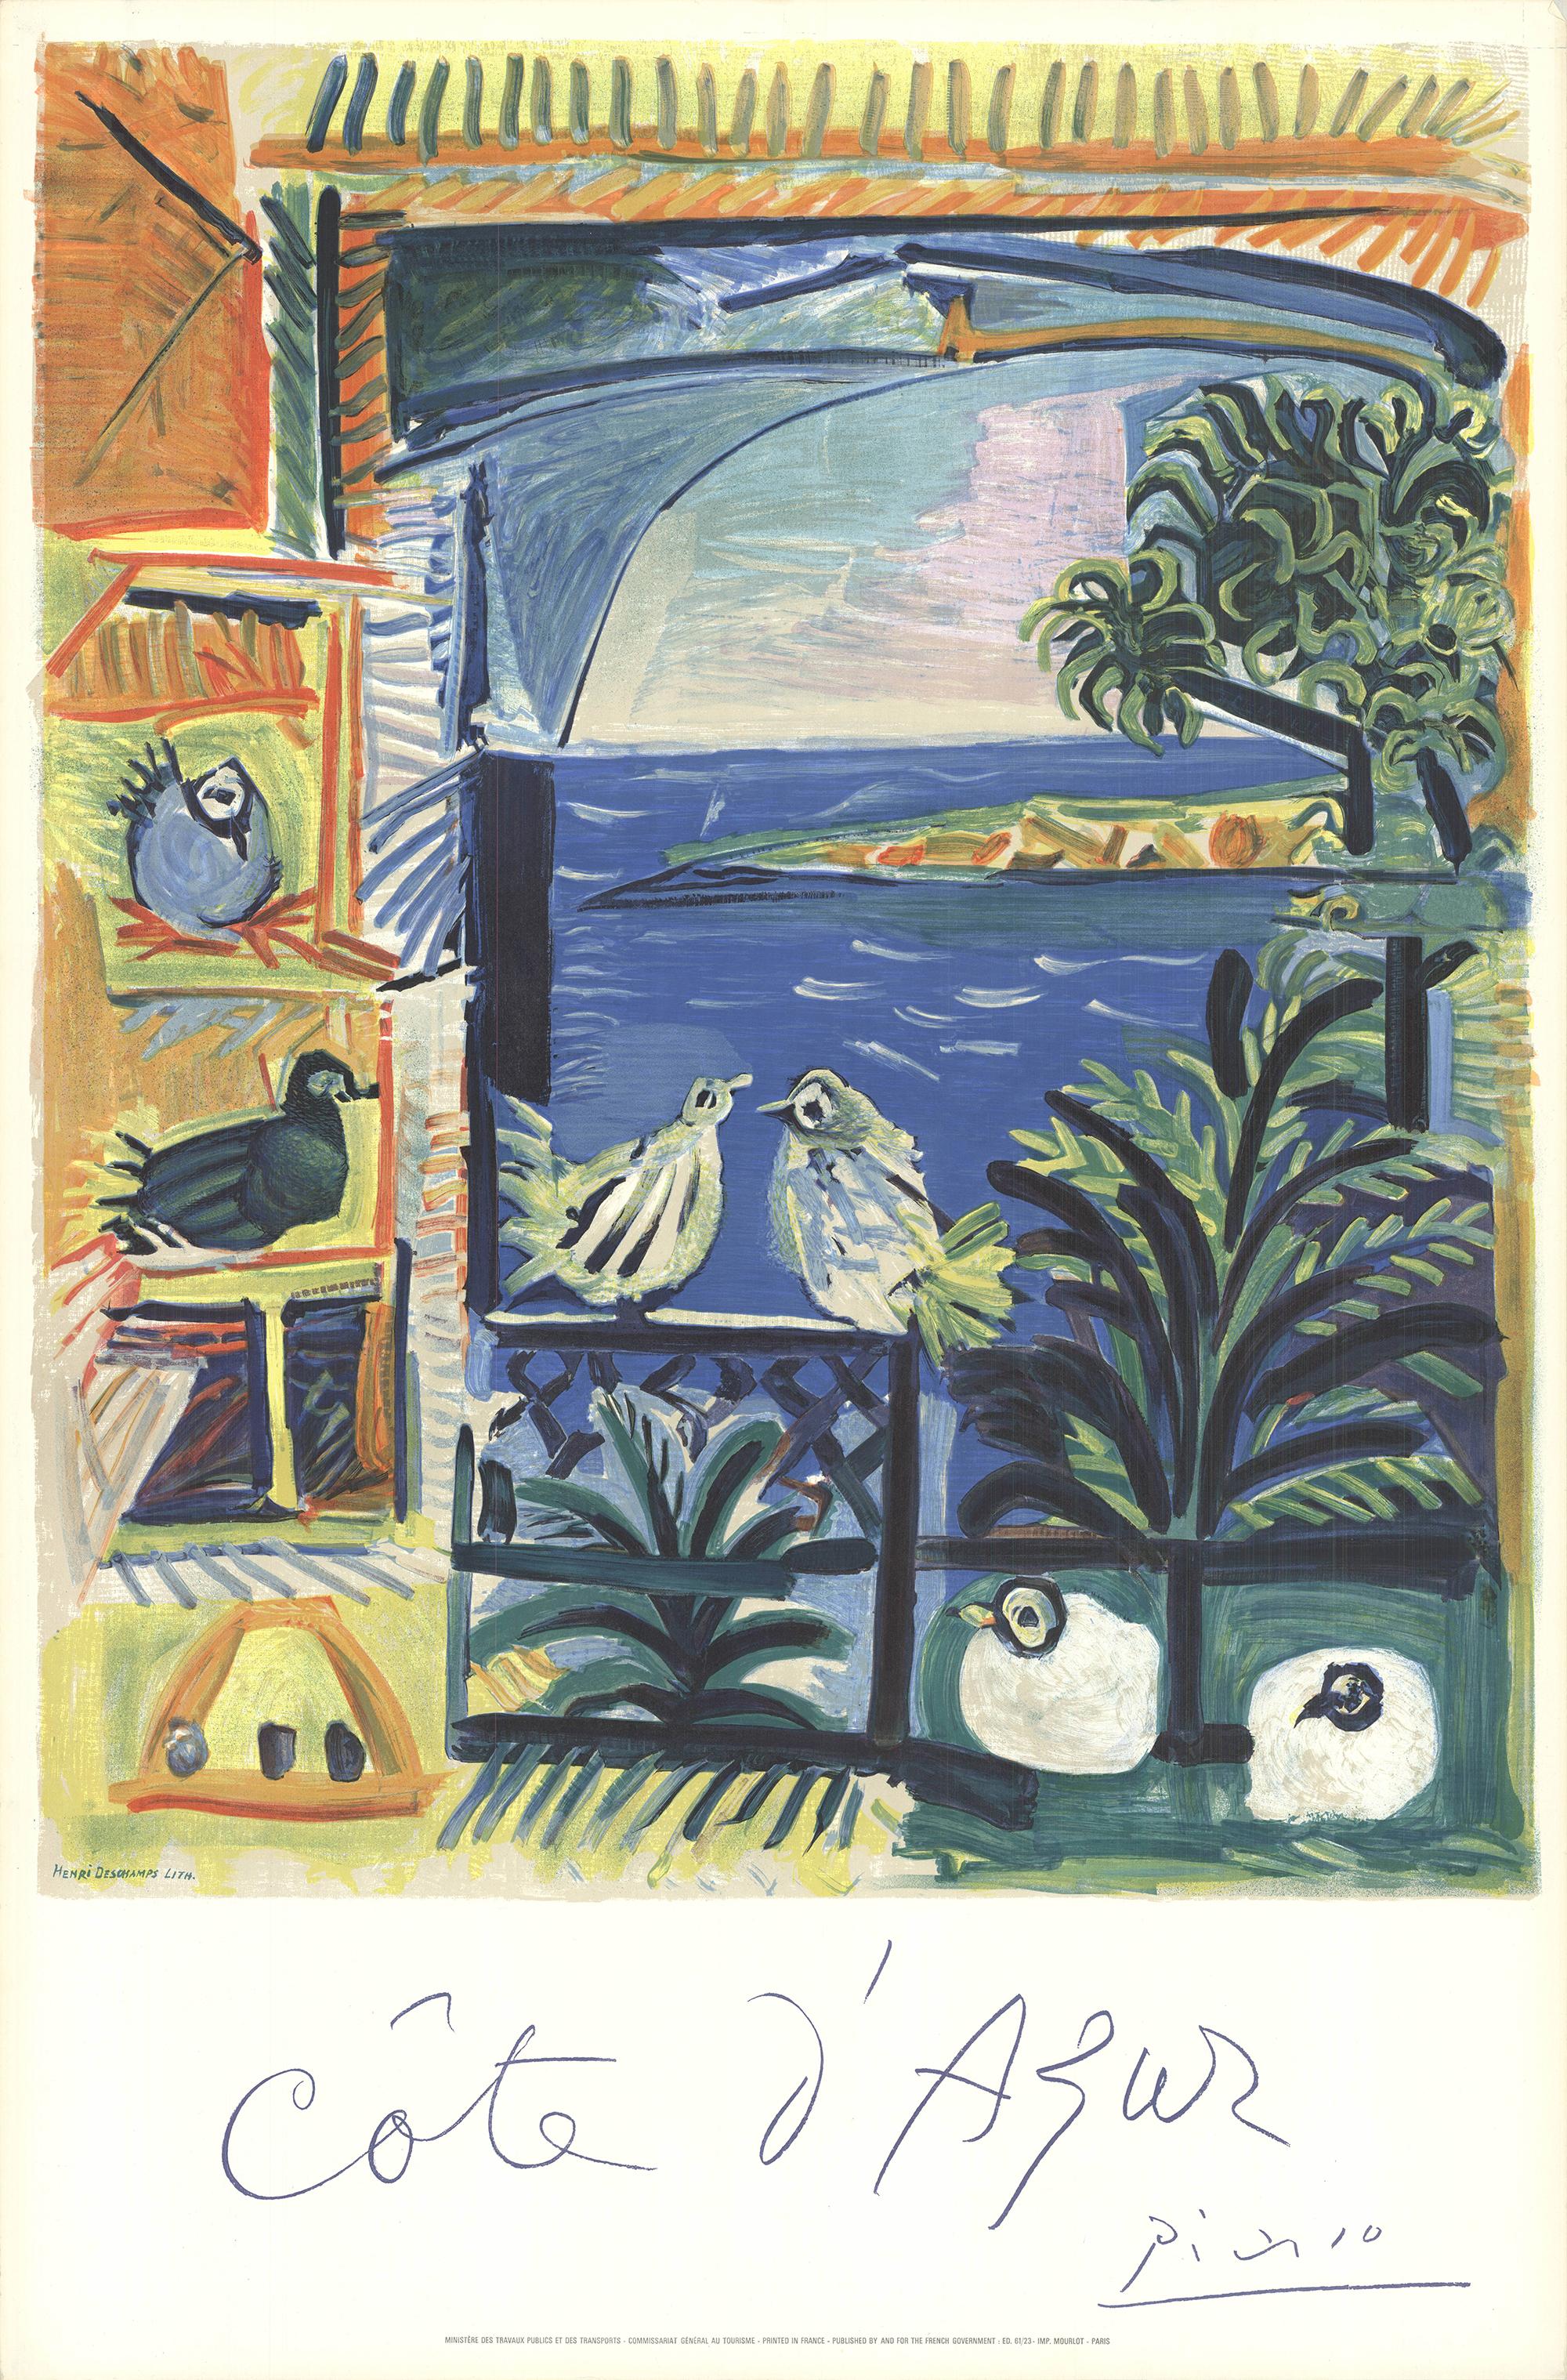 Nach Picasso Poster
Czwiklitzer #177
Originalplakat, entworfen von Picasso in Collaboration mit Henri Deschamps. Die Lithografie wurde vom französischen Ministerium für Verkehr und öffentliche Arbeiten herausgegeben und von der Imprimerie Mourlot in